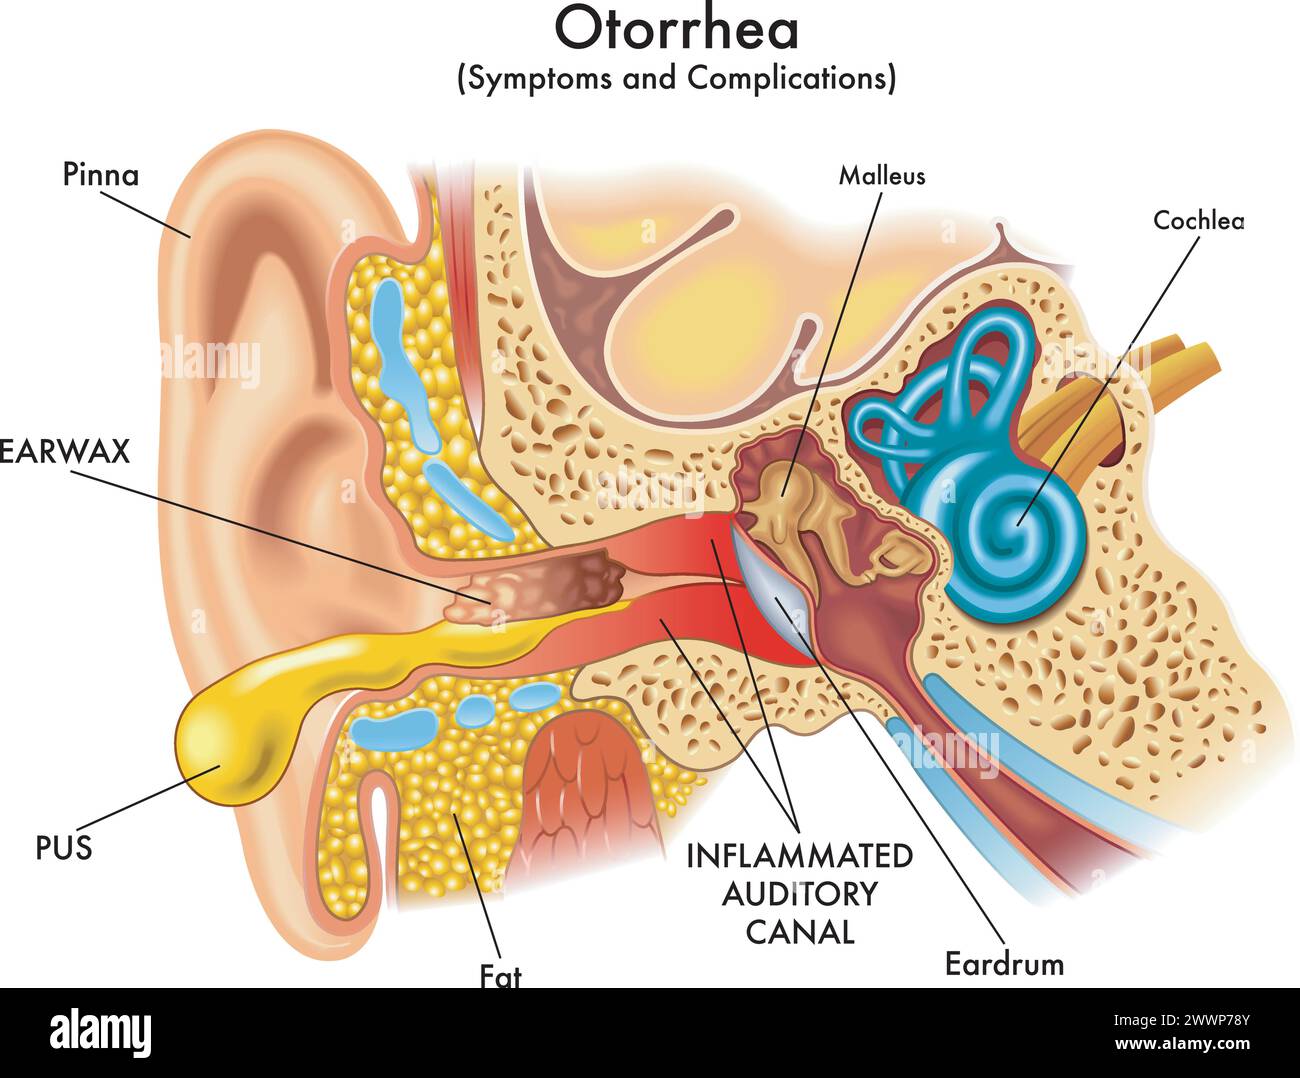 Medizinische Illustration einiger Symptome und Komplikationen der Otorrhoe, eine Pathologie, die das Ohr beeinflusst, mit Anmerkungen. Stock Vektor